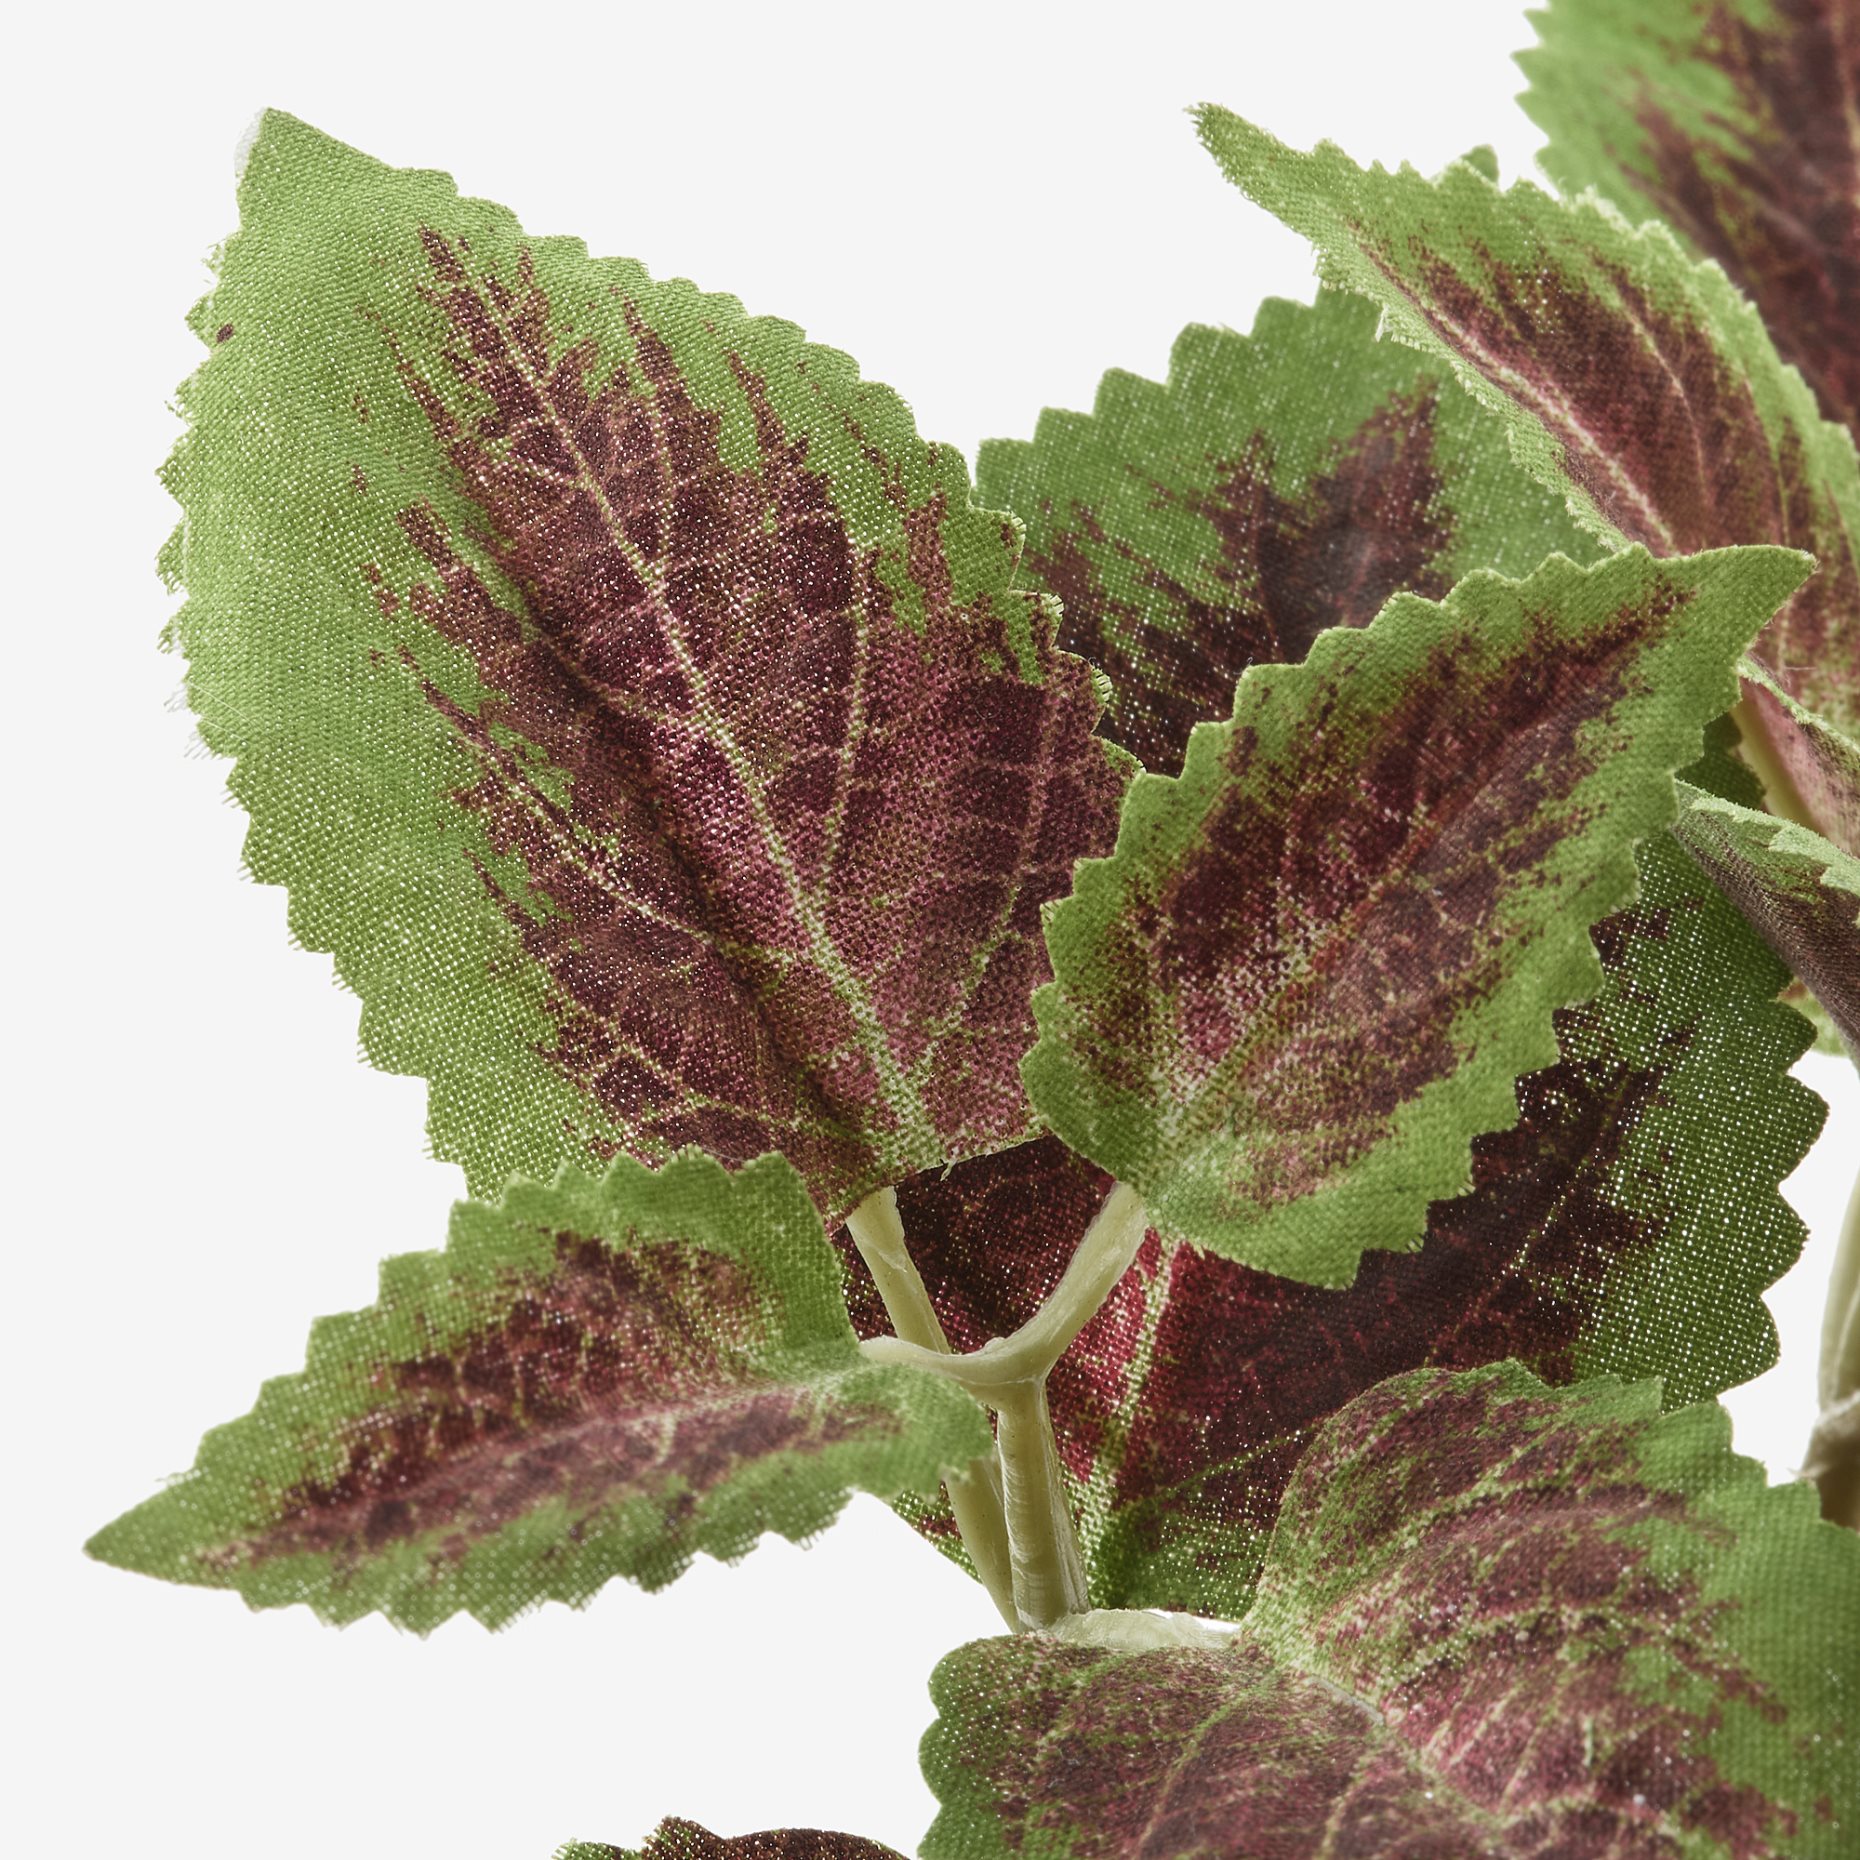 FEJKA, τεχνητό φυτό σε γλάστρα εσωτερικού/εξωτερικού χώρου/ωραιόφυλλο, 6 cm, 104.966.08